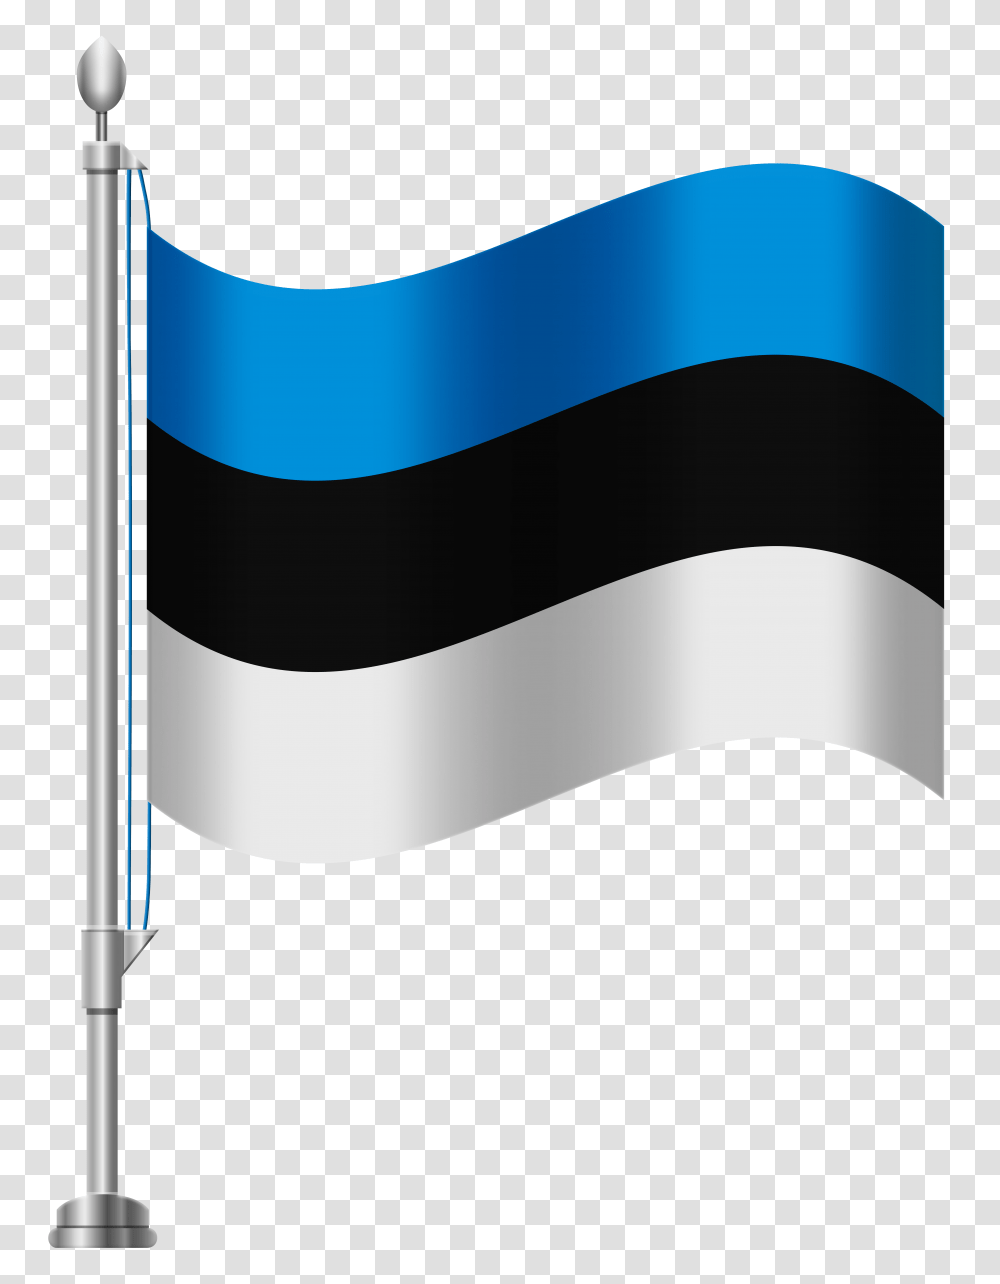 Estonia Flag Clip Art, Axe, Sink Faucet Transparent Png